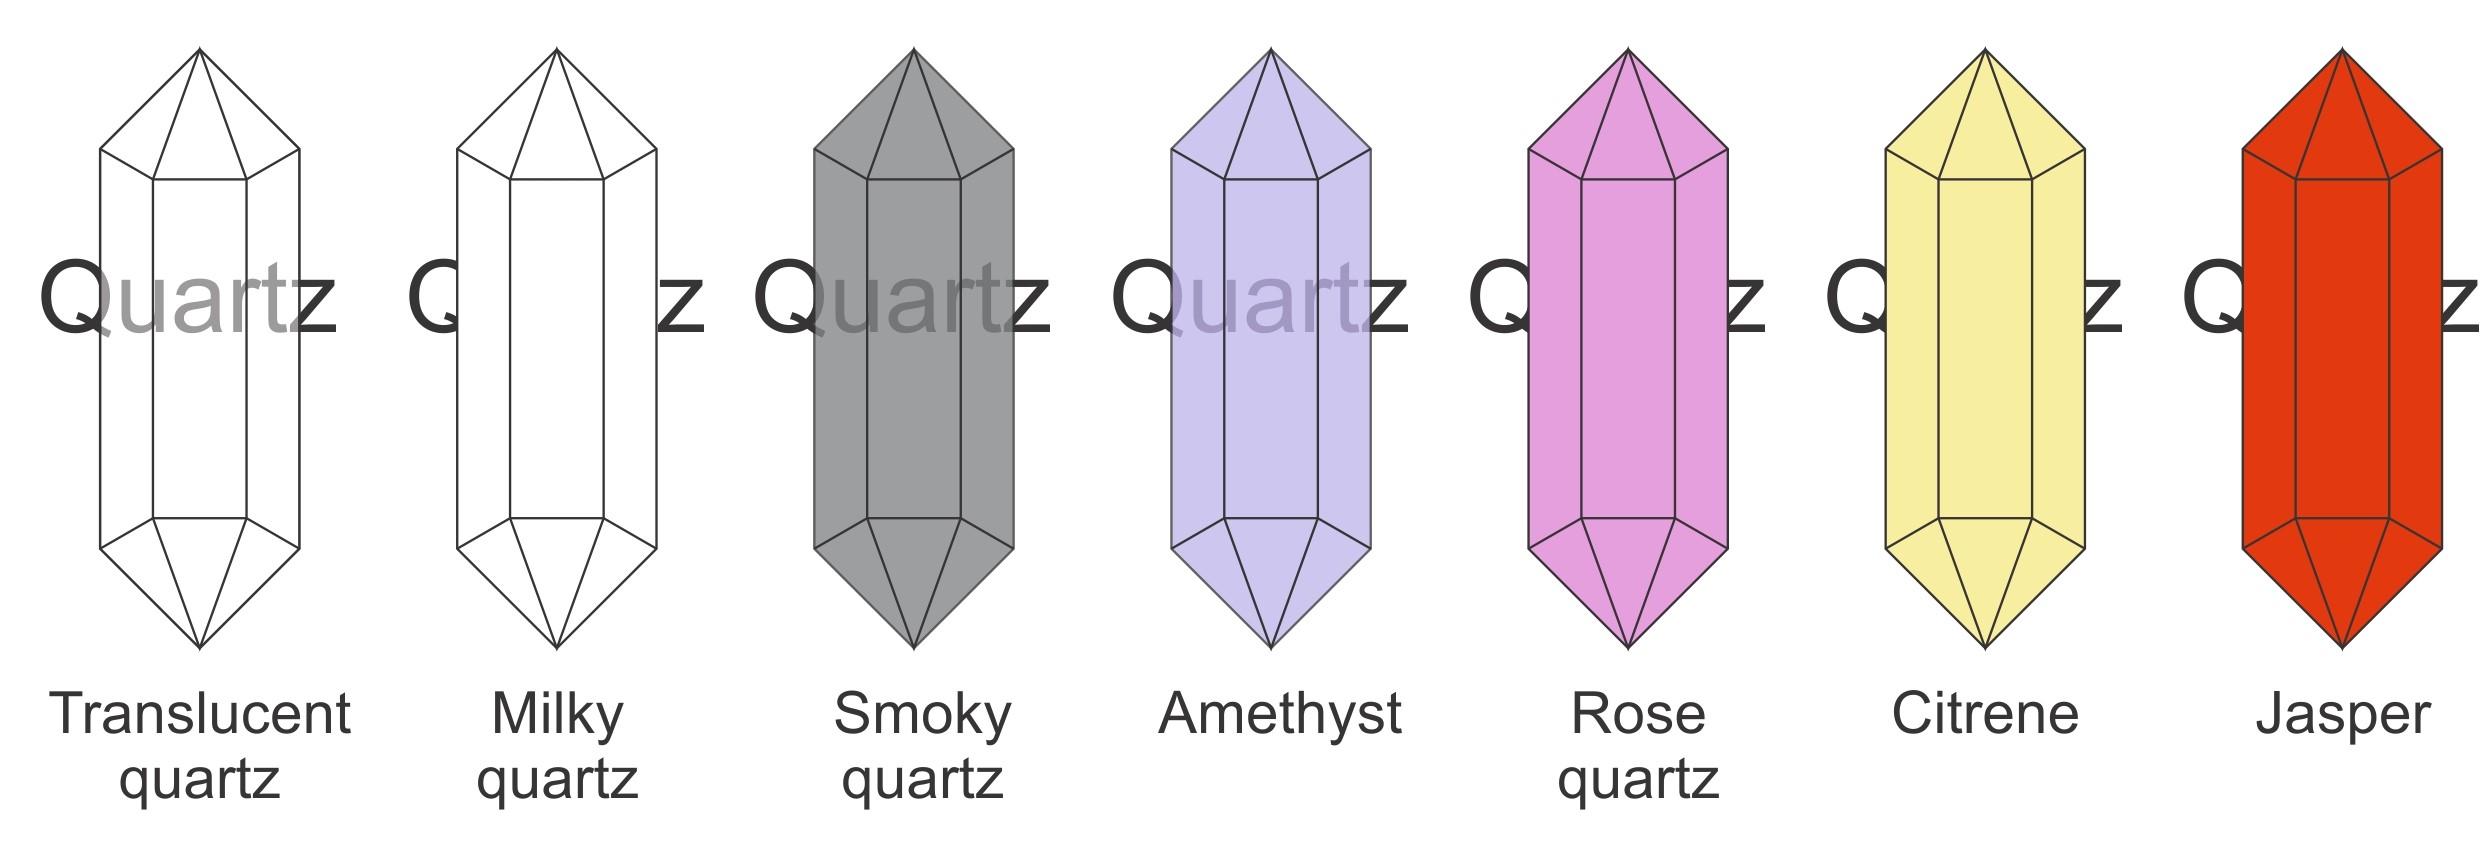 Varieties of quartz